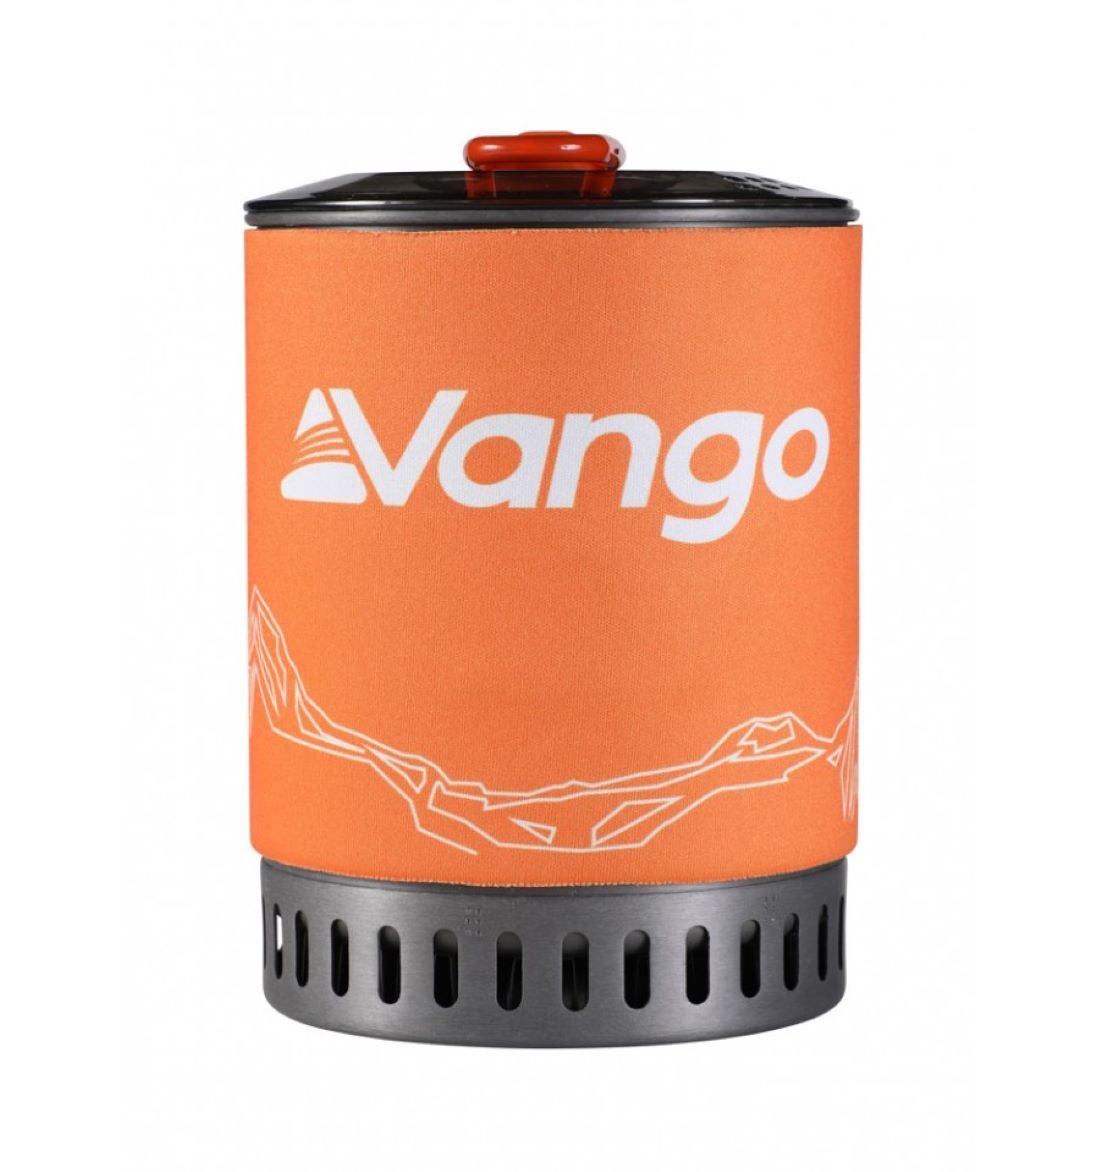 Vango Ultralight Heat Exchanger Cook Kit - Matlagning set